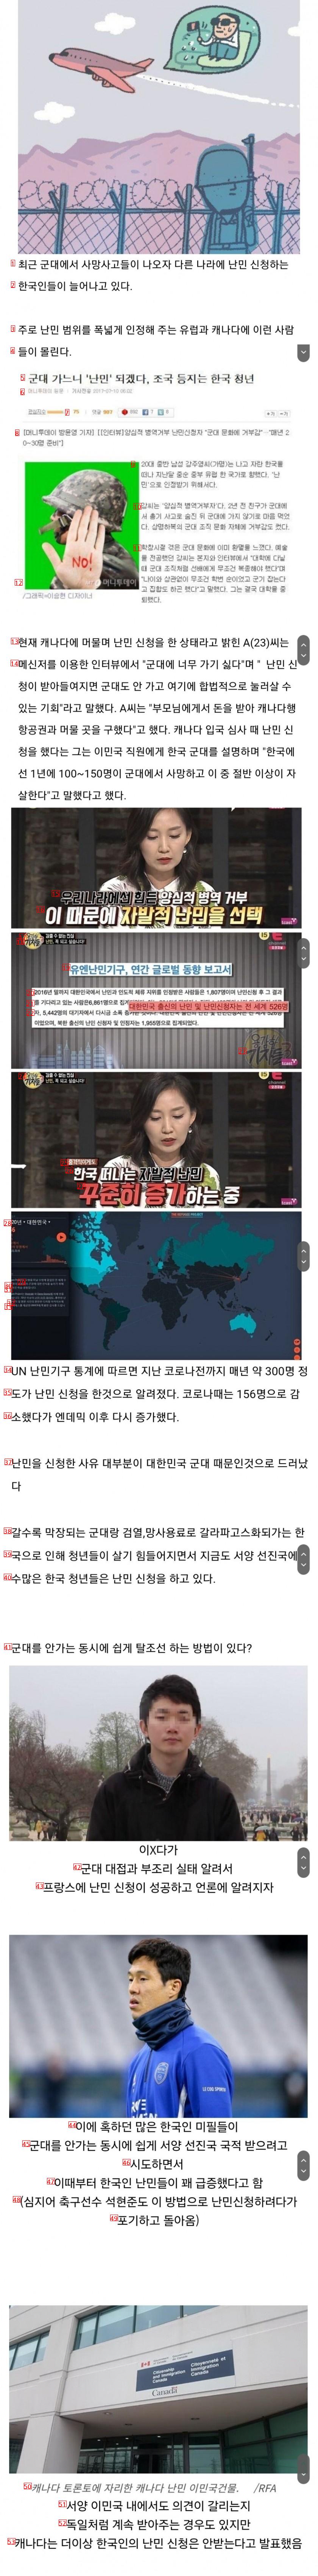 군대 안 가려고 선진국에 난민 신청하는 한국 청년들